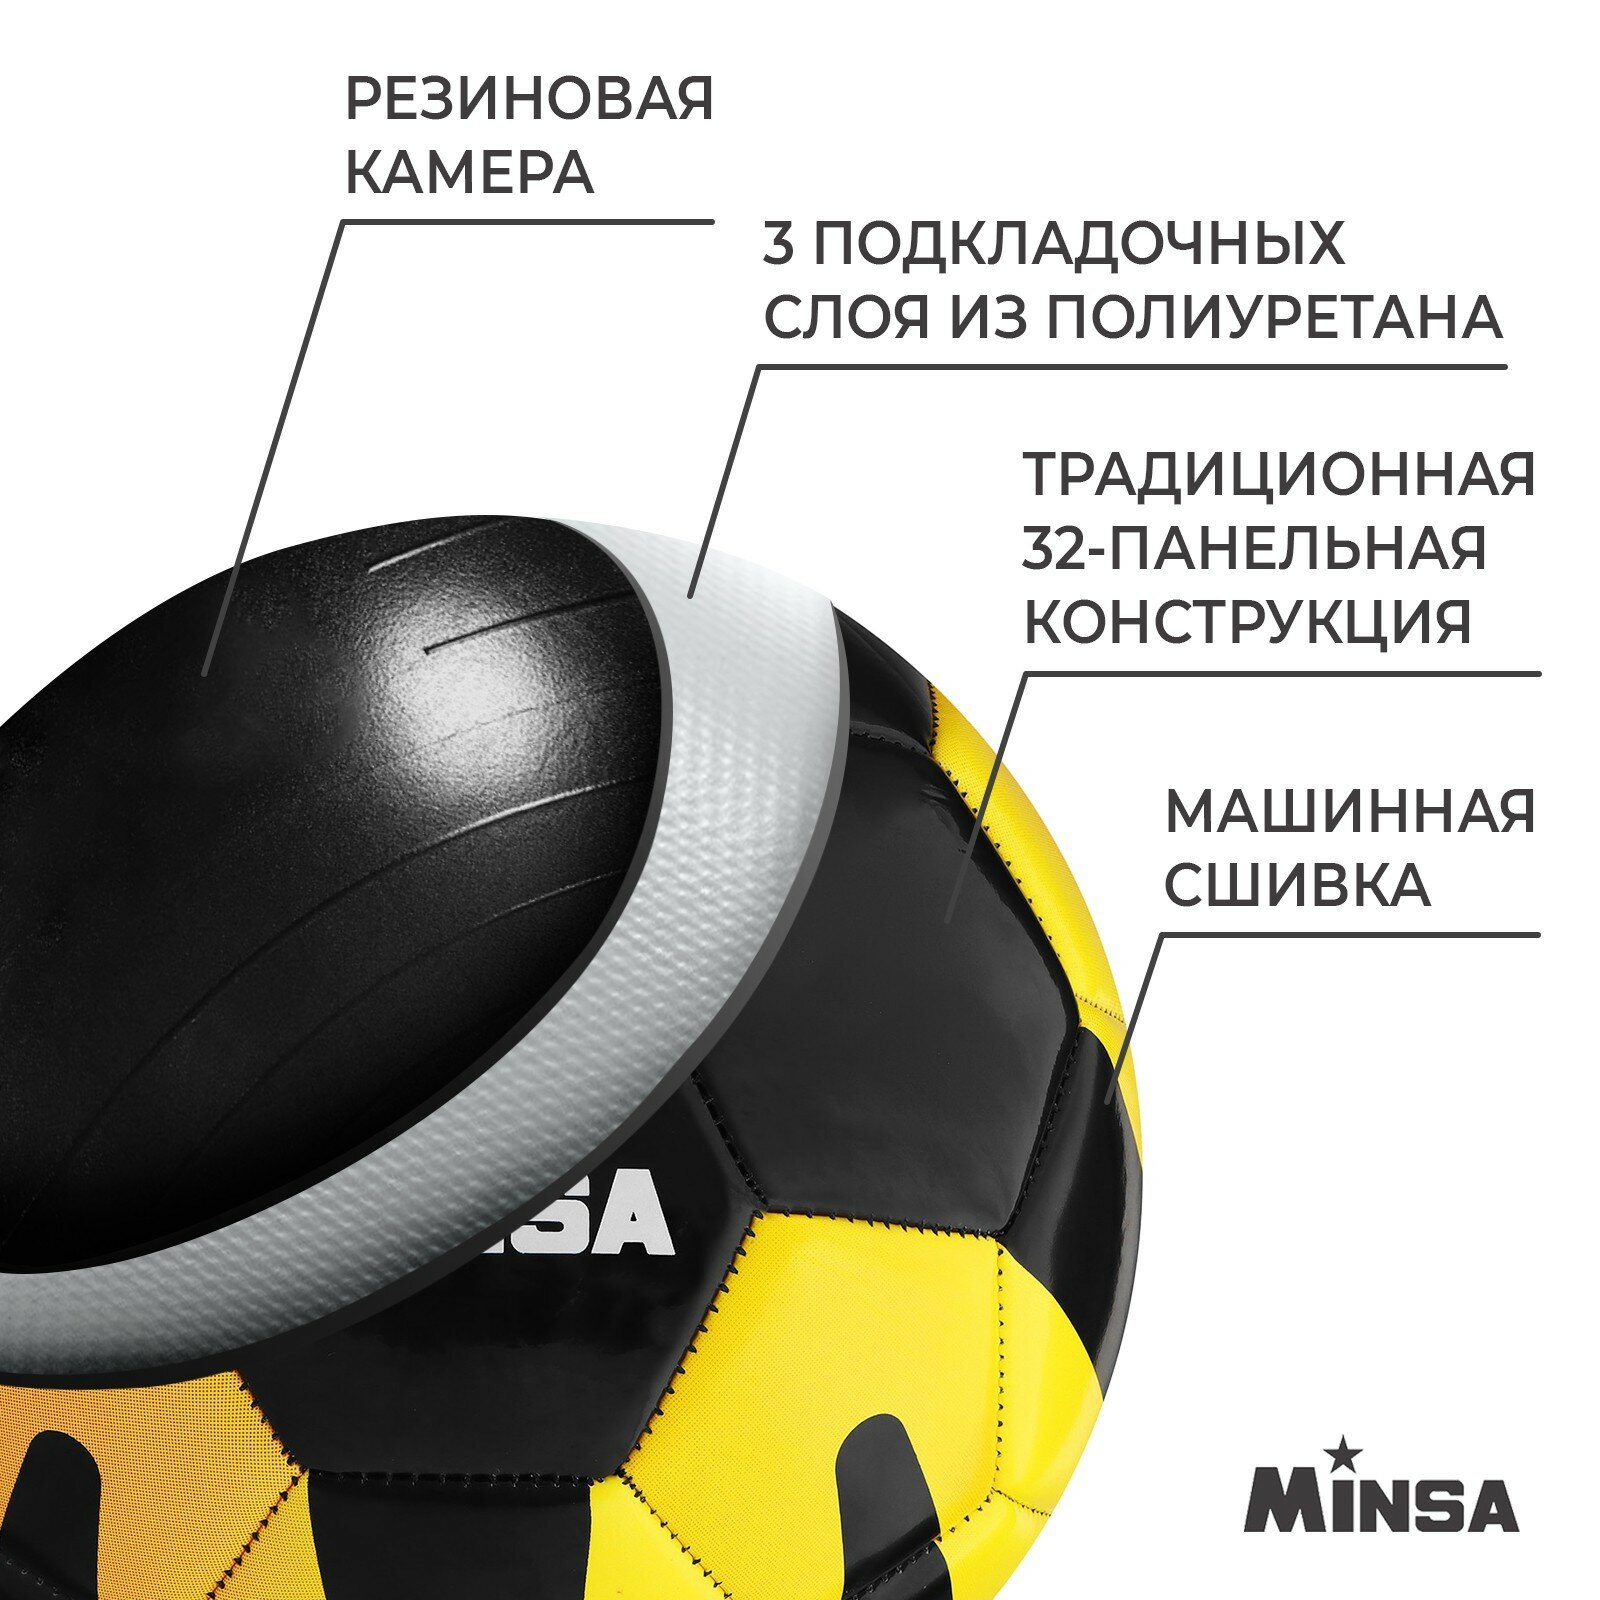 Футбольный мяч MINSA черно-желто-оранжевый, размер 5